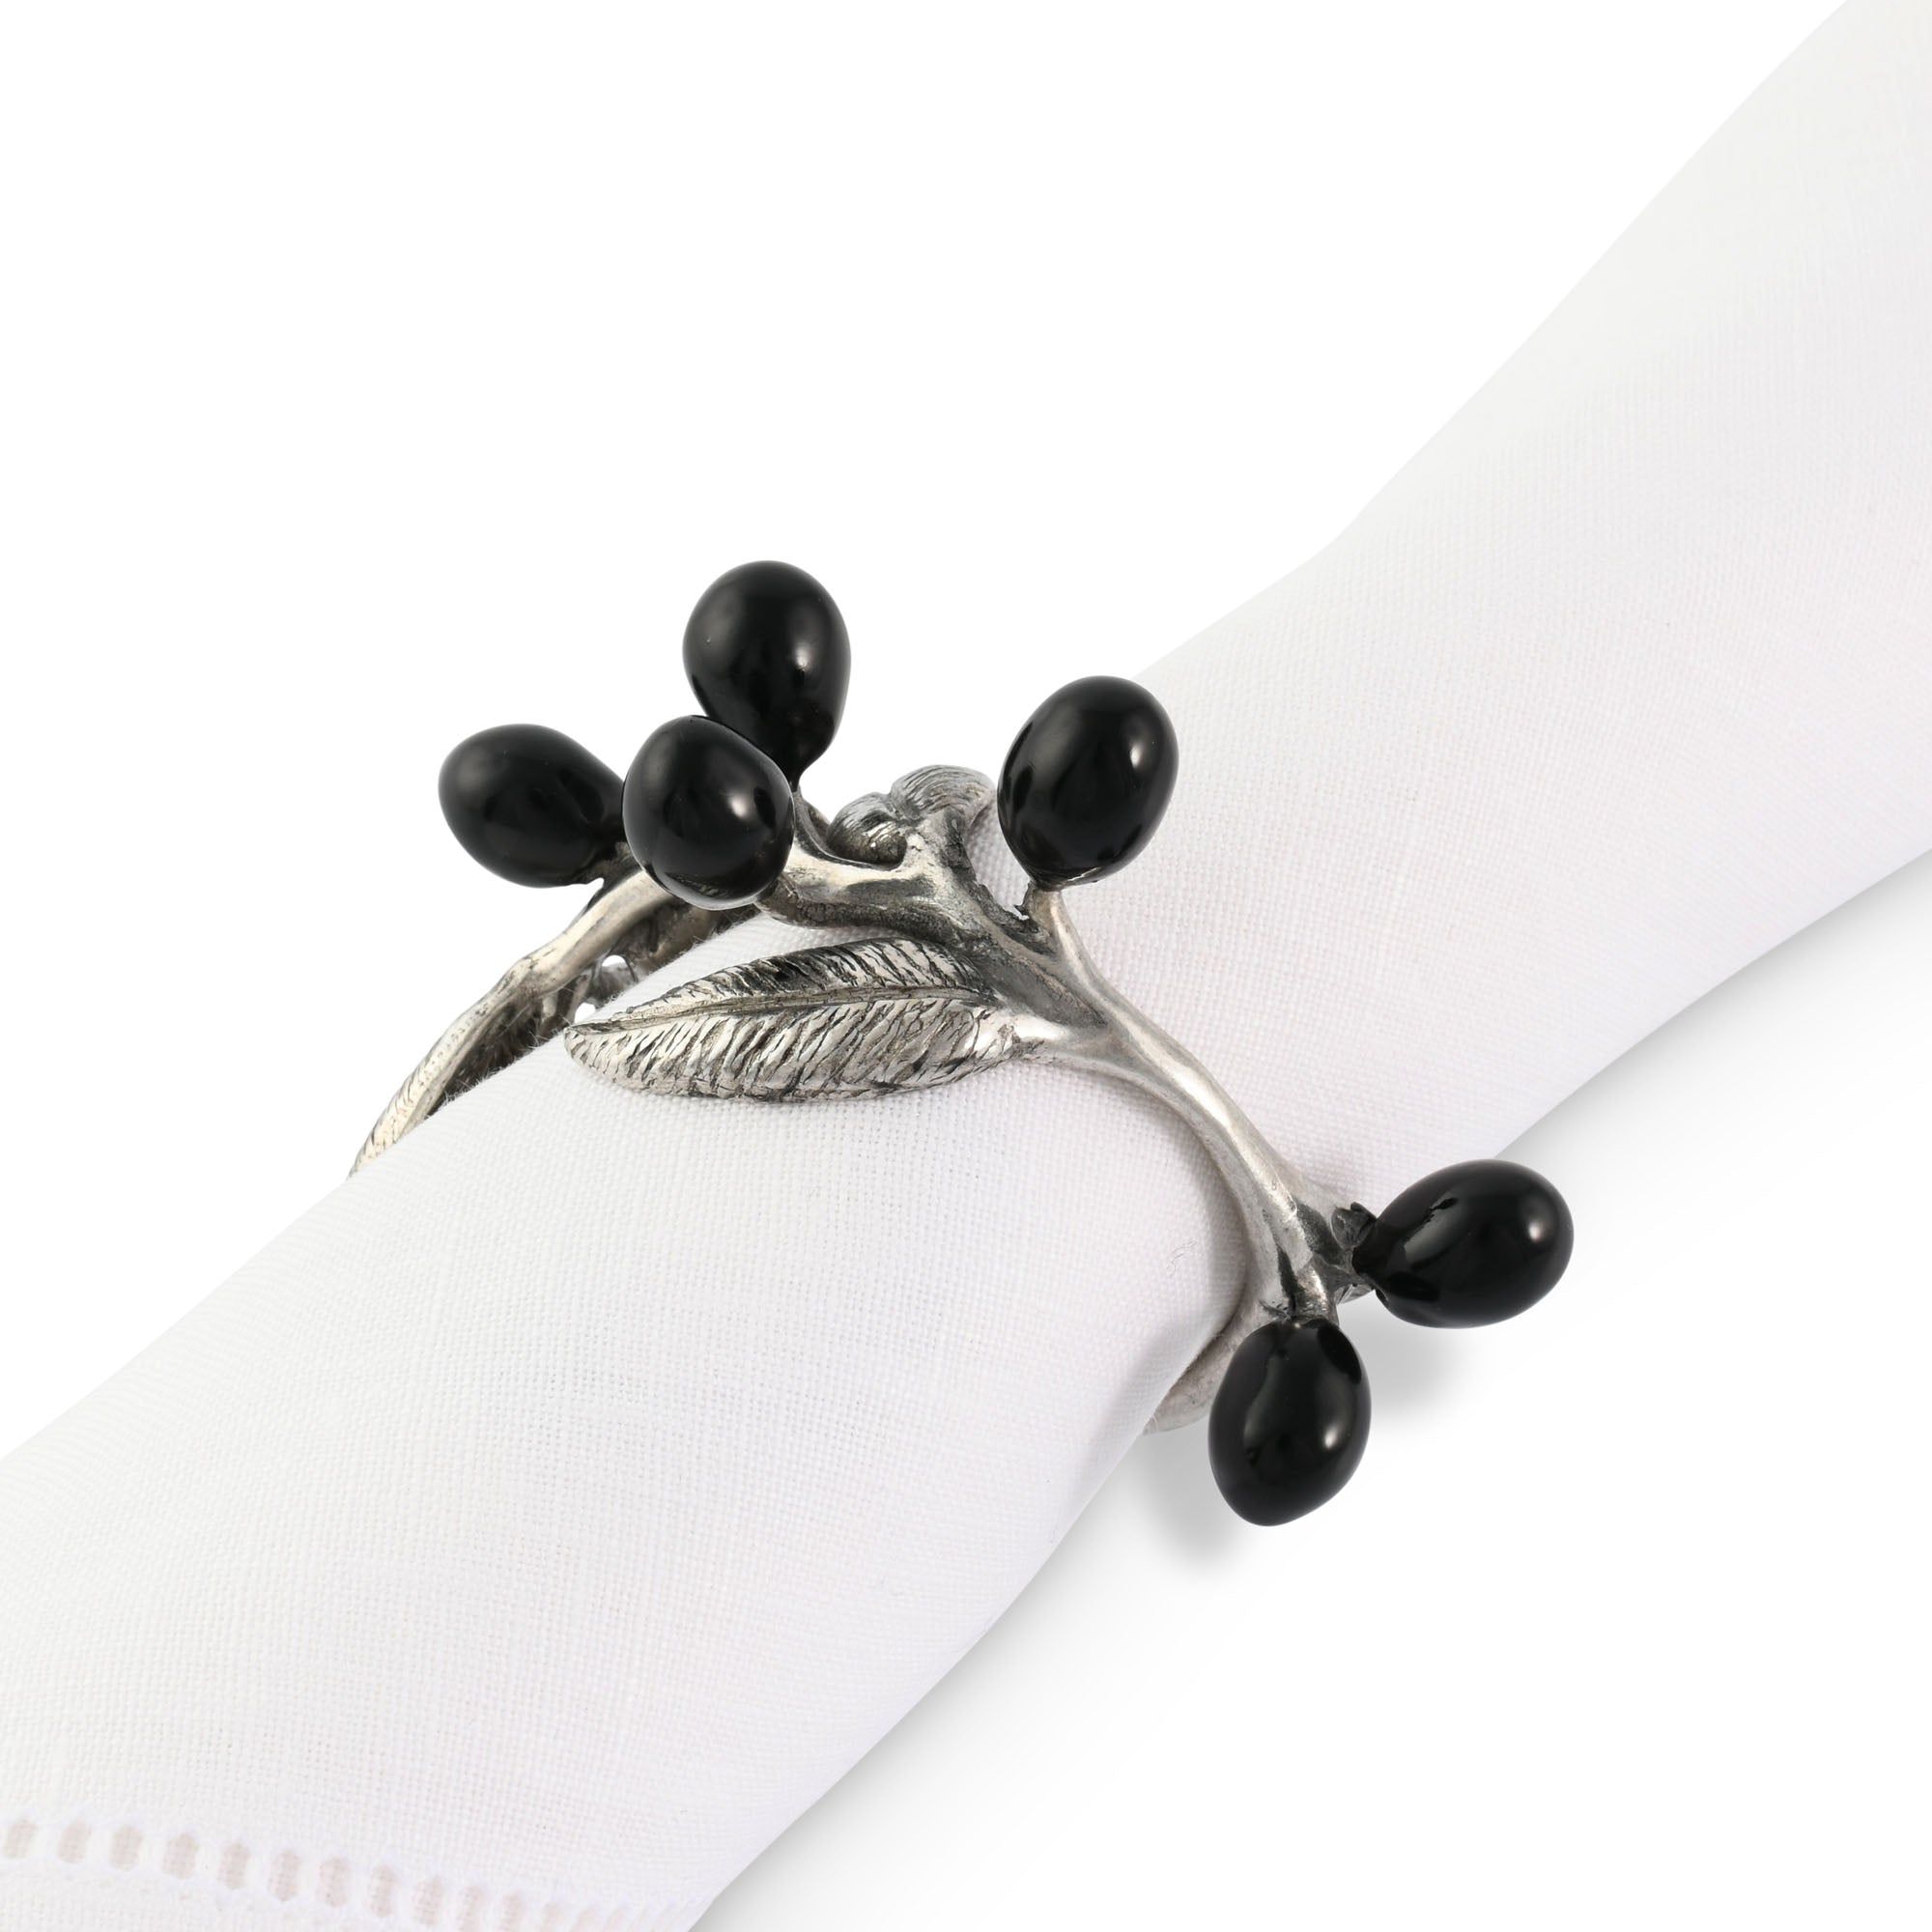 Vagabond House Olive Napkin Ring Product Image